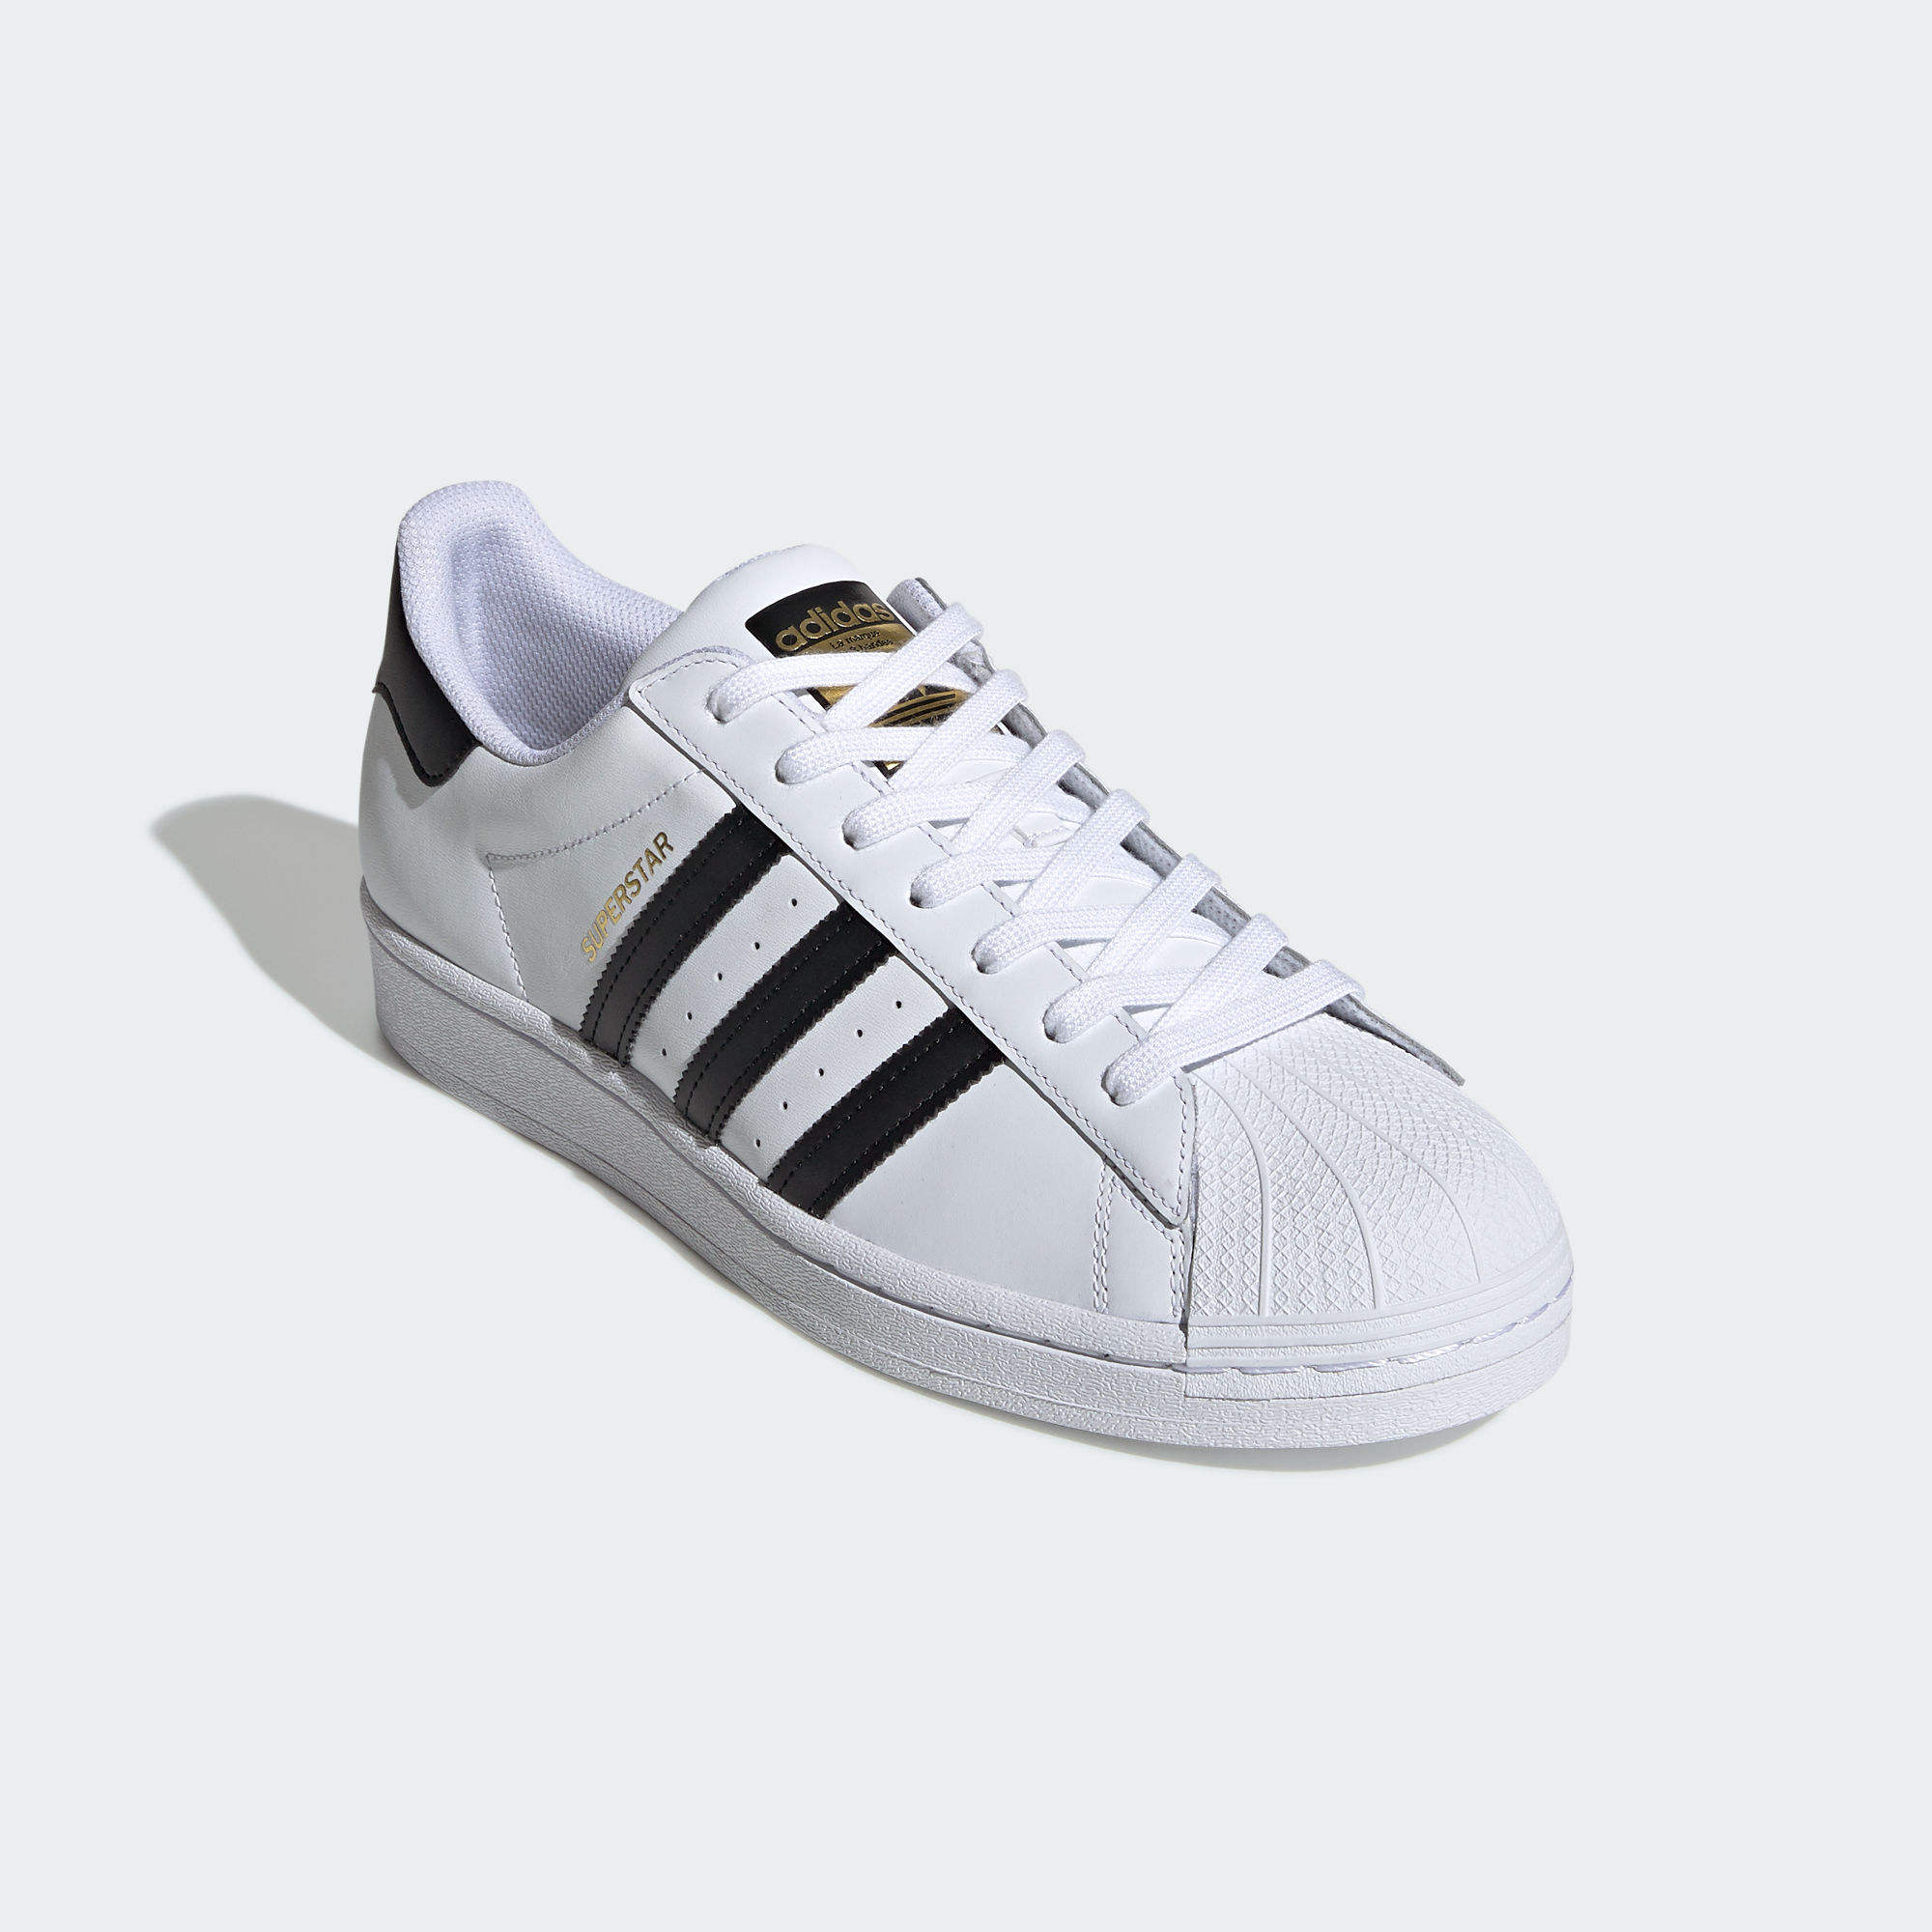 運動鞋- 白色| 男子,女子| adidas(愛迪達)香港官方網上商店